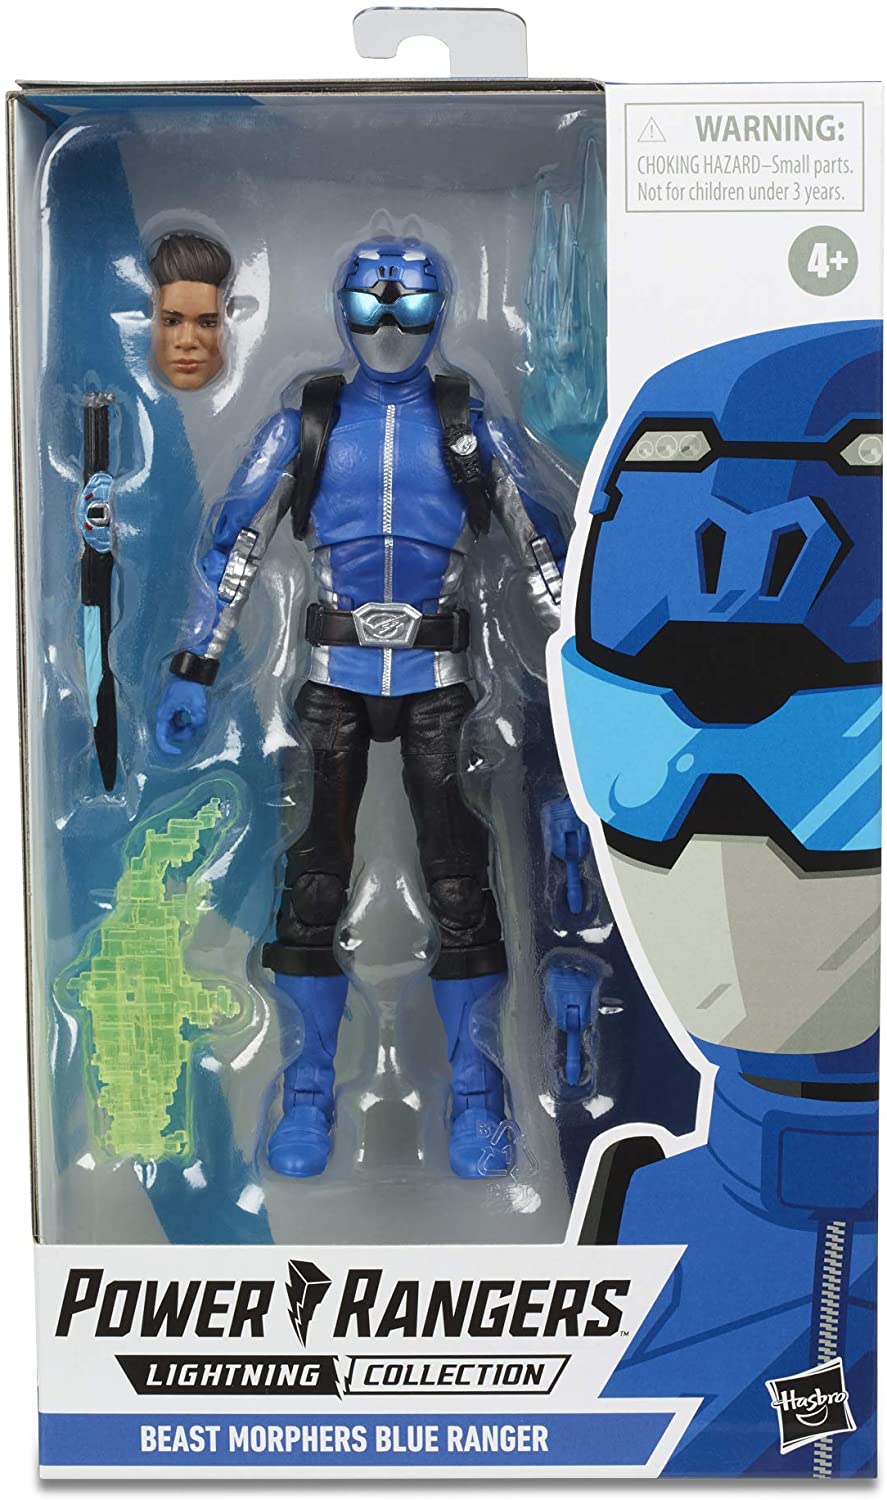 Power Rangers Lightning Collection - Beast Morphers Blue Ranger